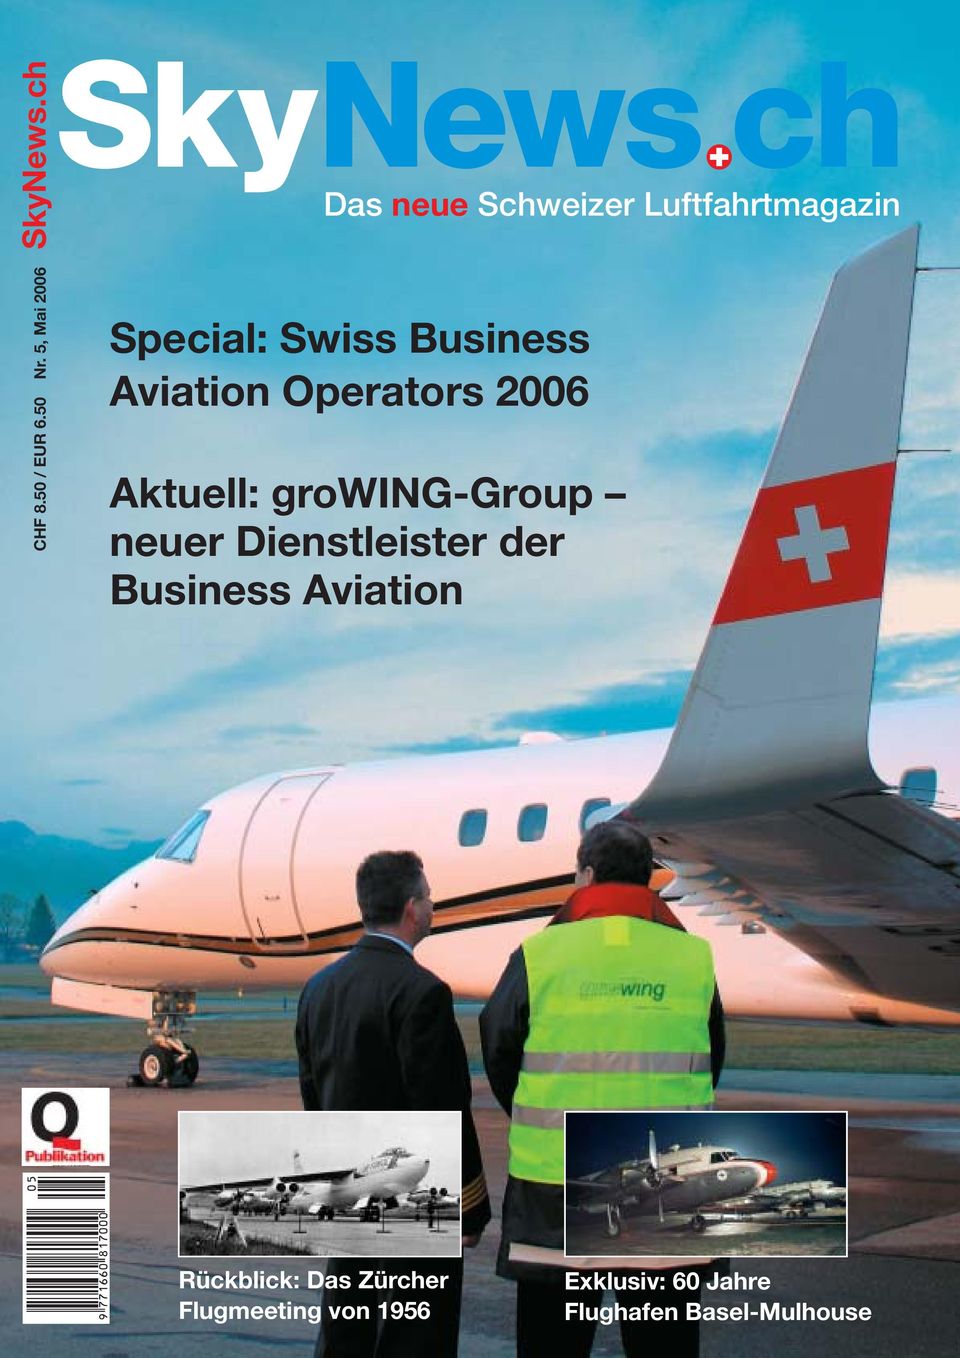 Aviation Operators 2006 Aktuell: growing-group neuer Dienstleister der